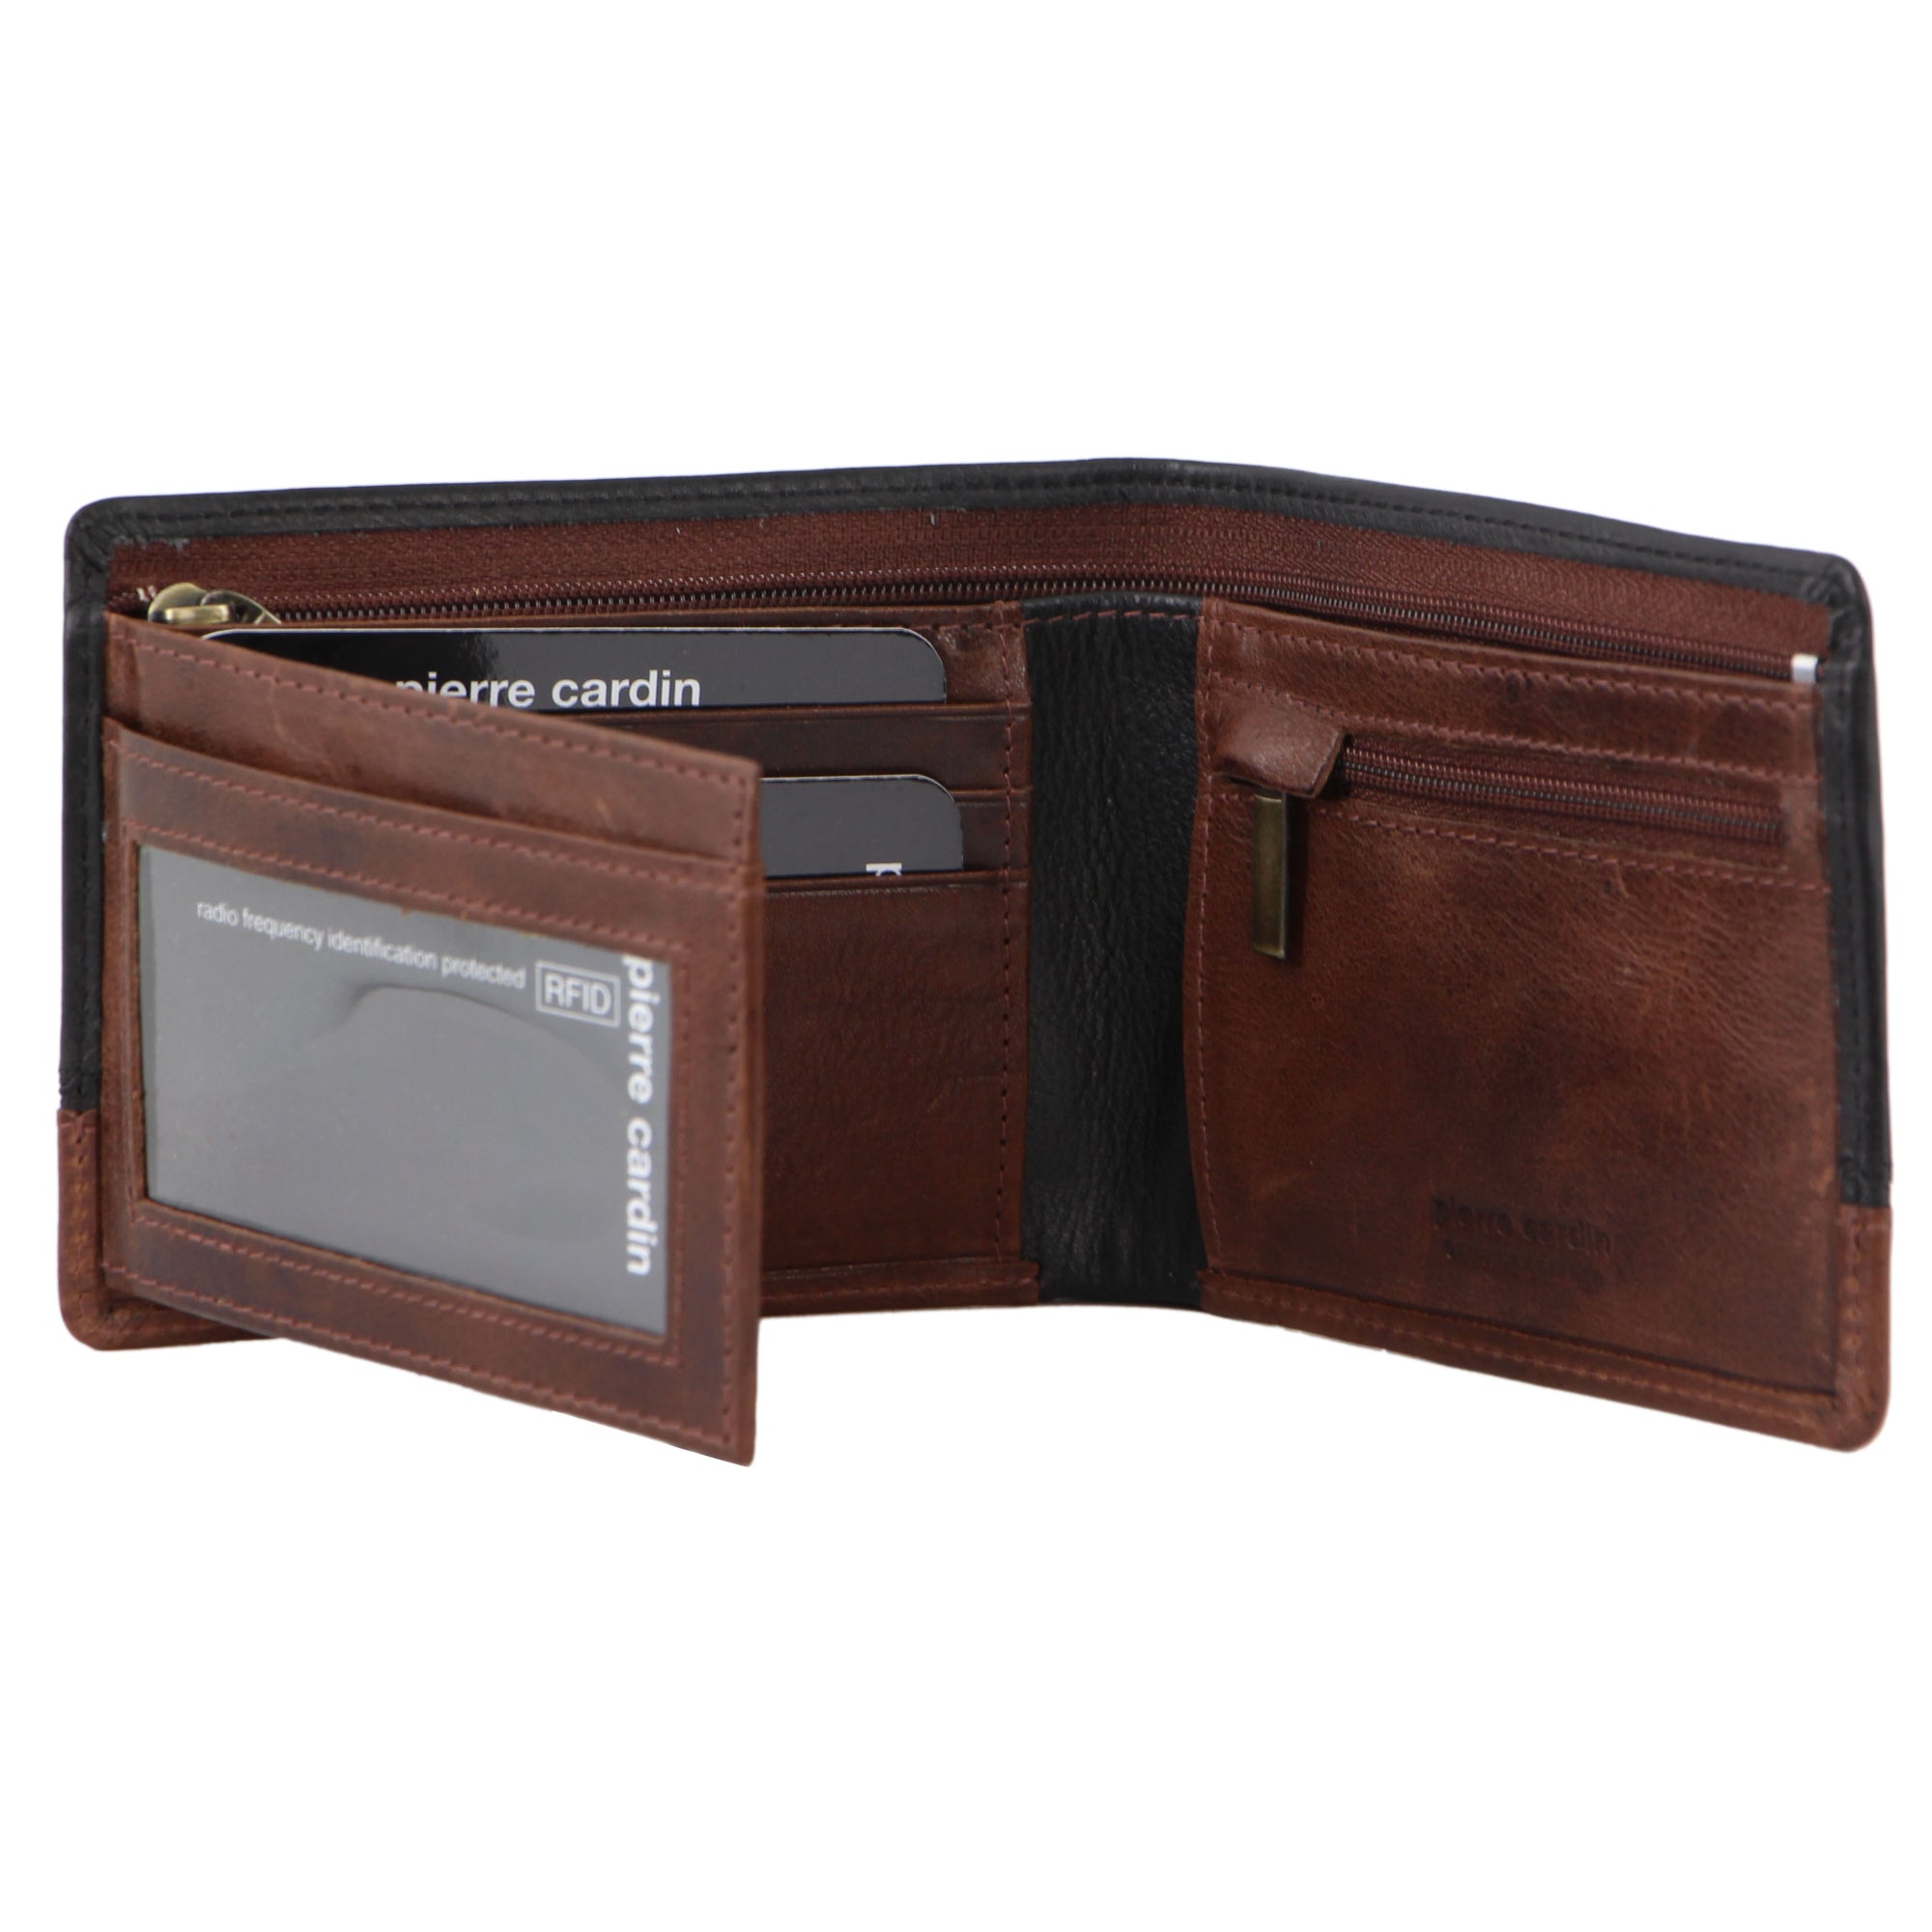 Pierre Cardin Leather 2-Tone Men's Tri-Fold Wallet in Black-Cognac